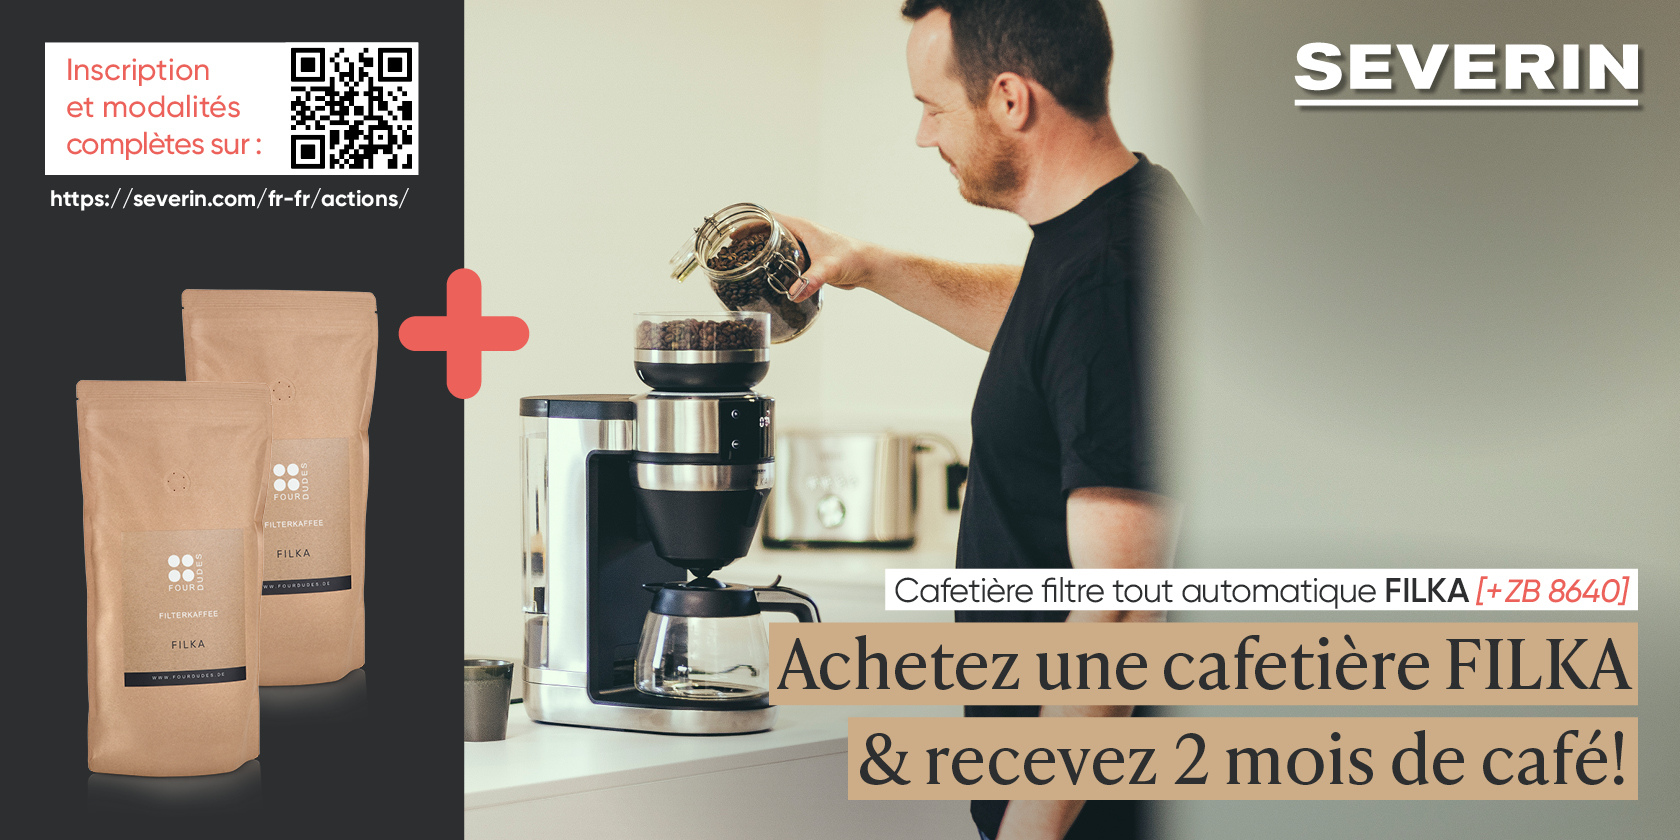 Cafetière filtre entièrement automatique FILKA KA 4851 - SEVERIN (Official)